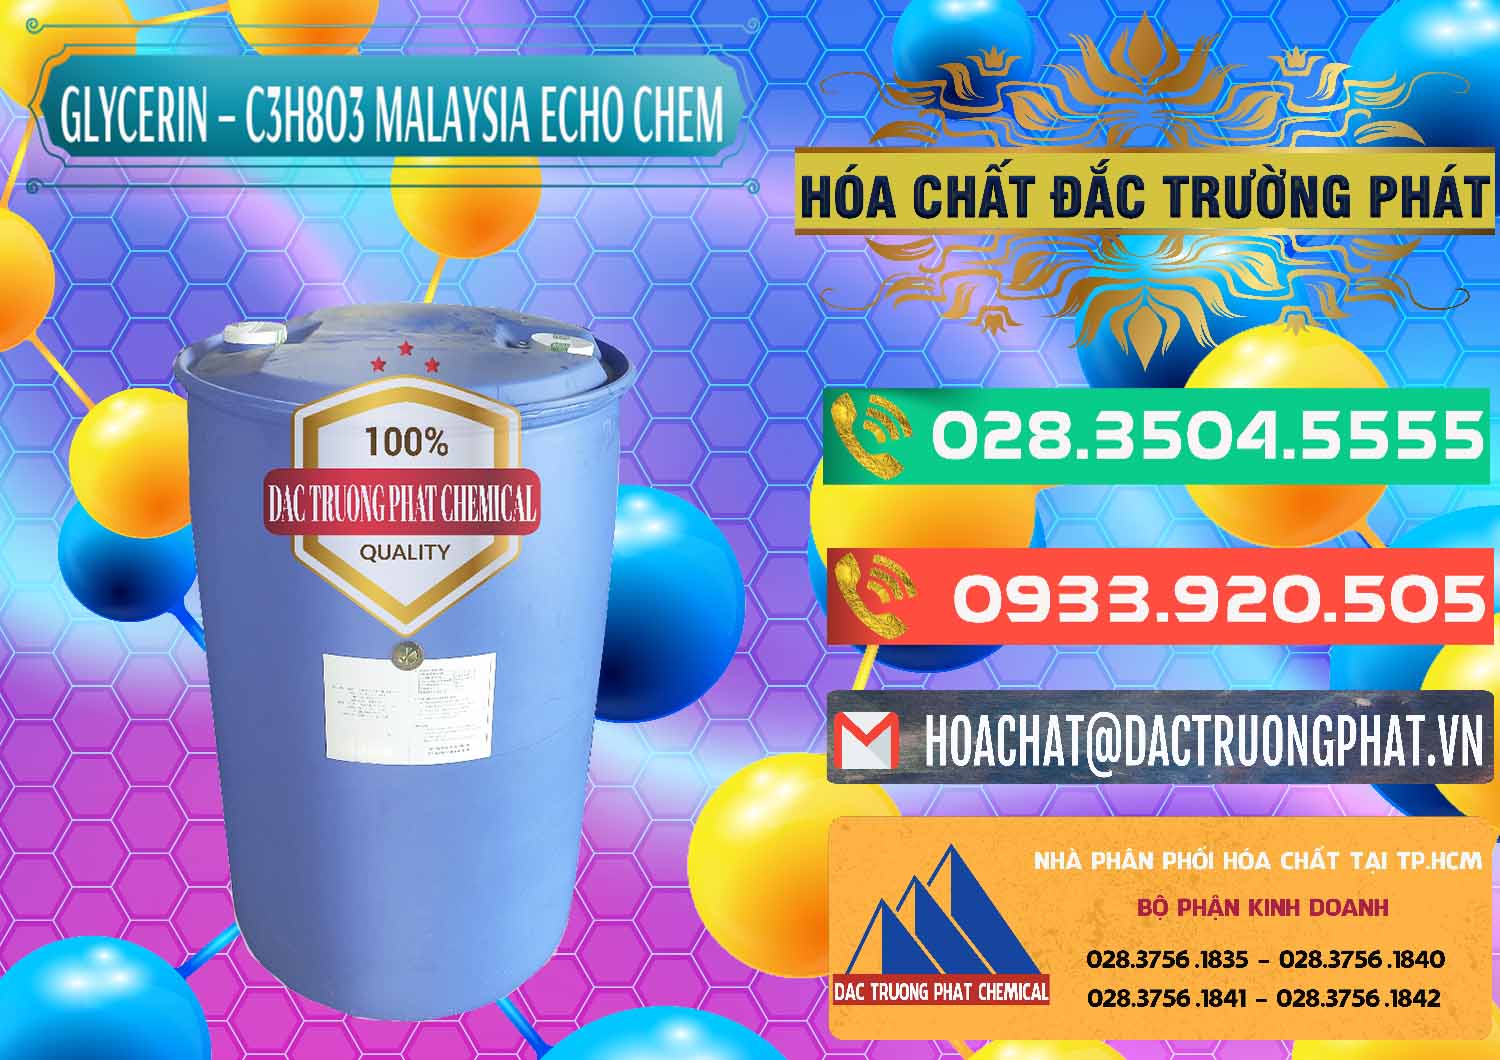 Nơi bán ( phân phối ) Glycerin – C3H8O3 99.7% Echo Chem Malaysia - 0273 - Công ty chuyên cung cấp - kinh doanh hóa chất tại TP.HCM - congtyhoachat.com.vn